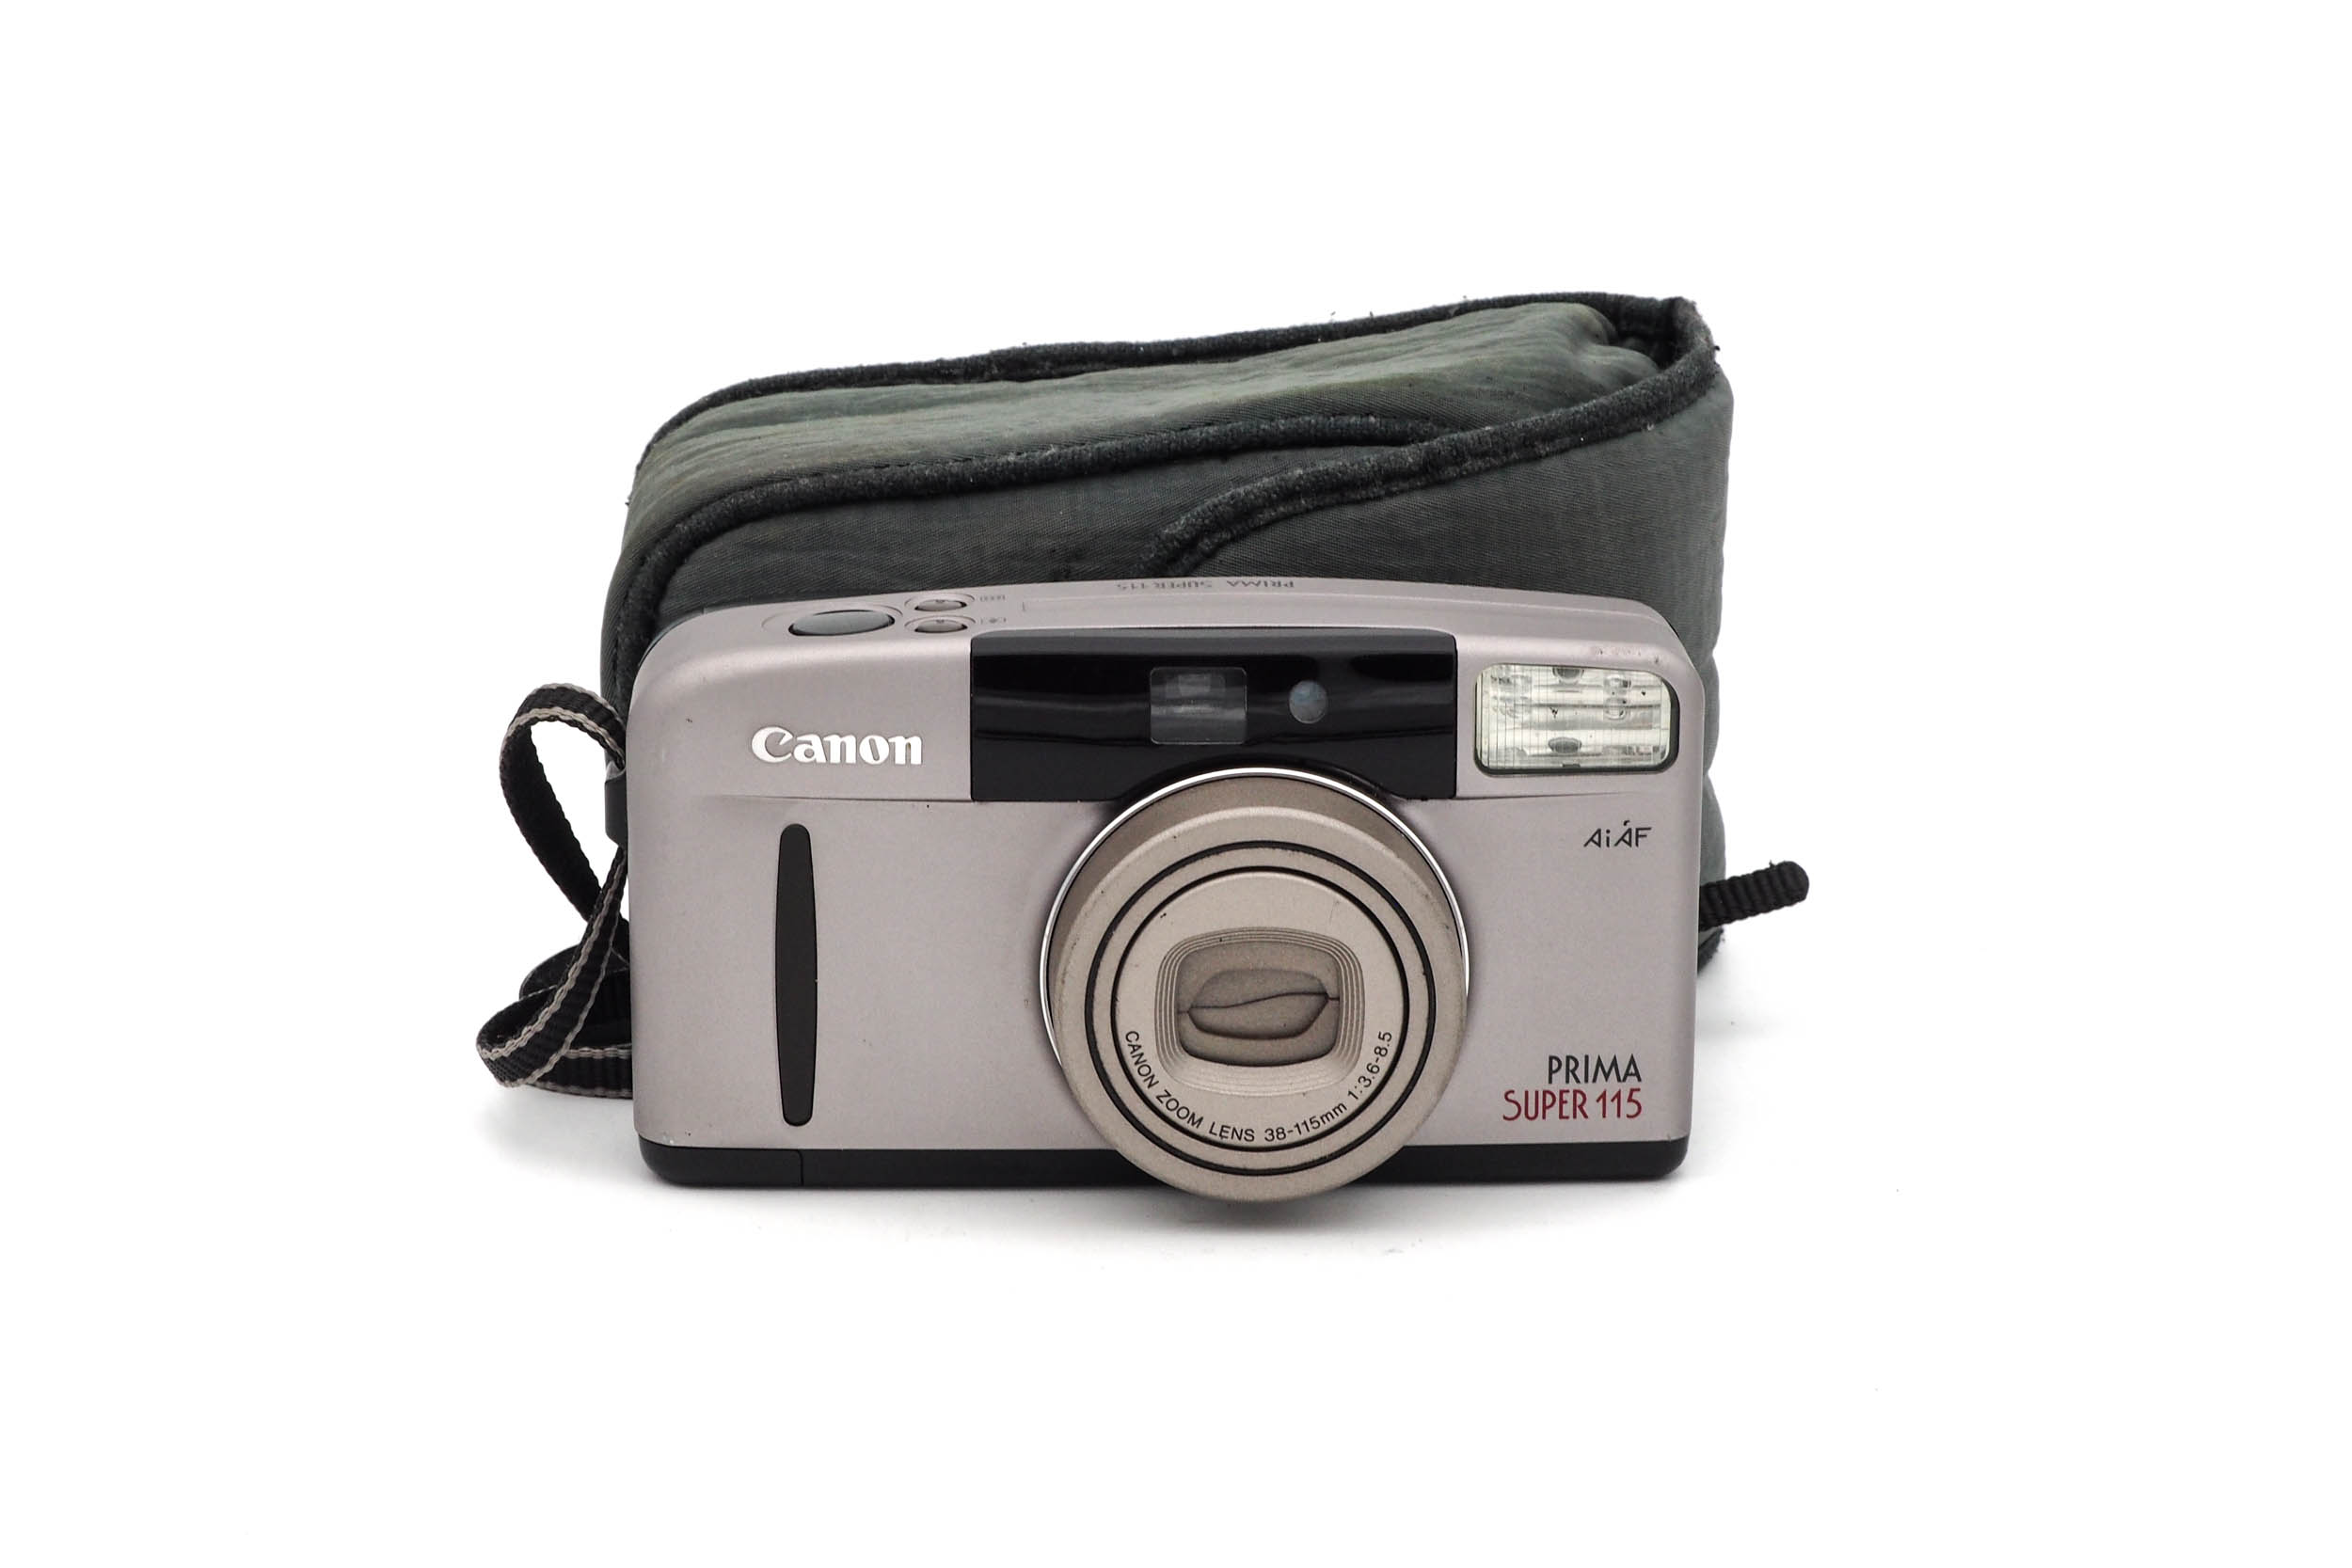 Canon Prima Super 115 